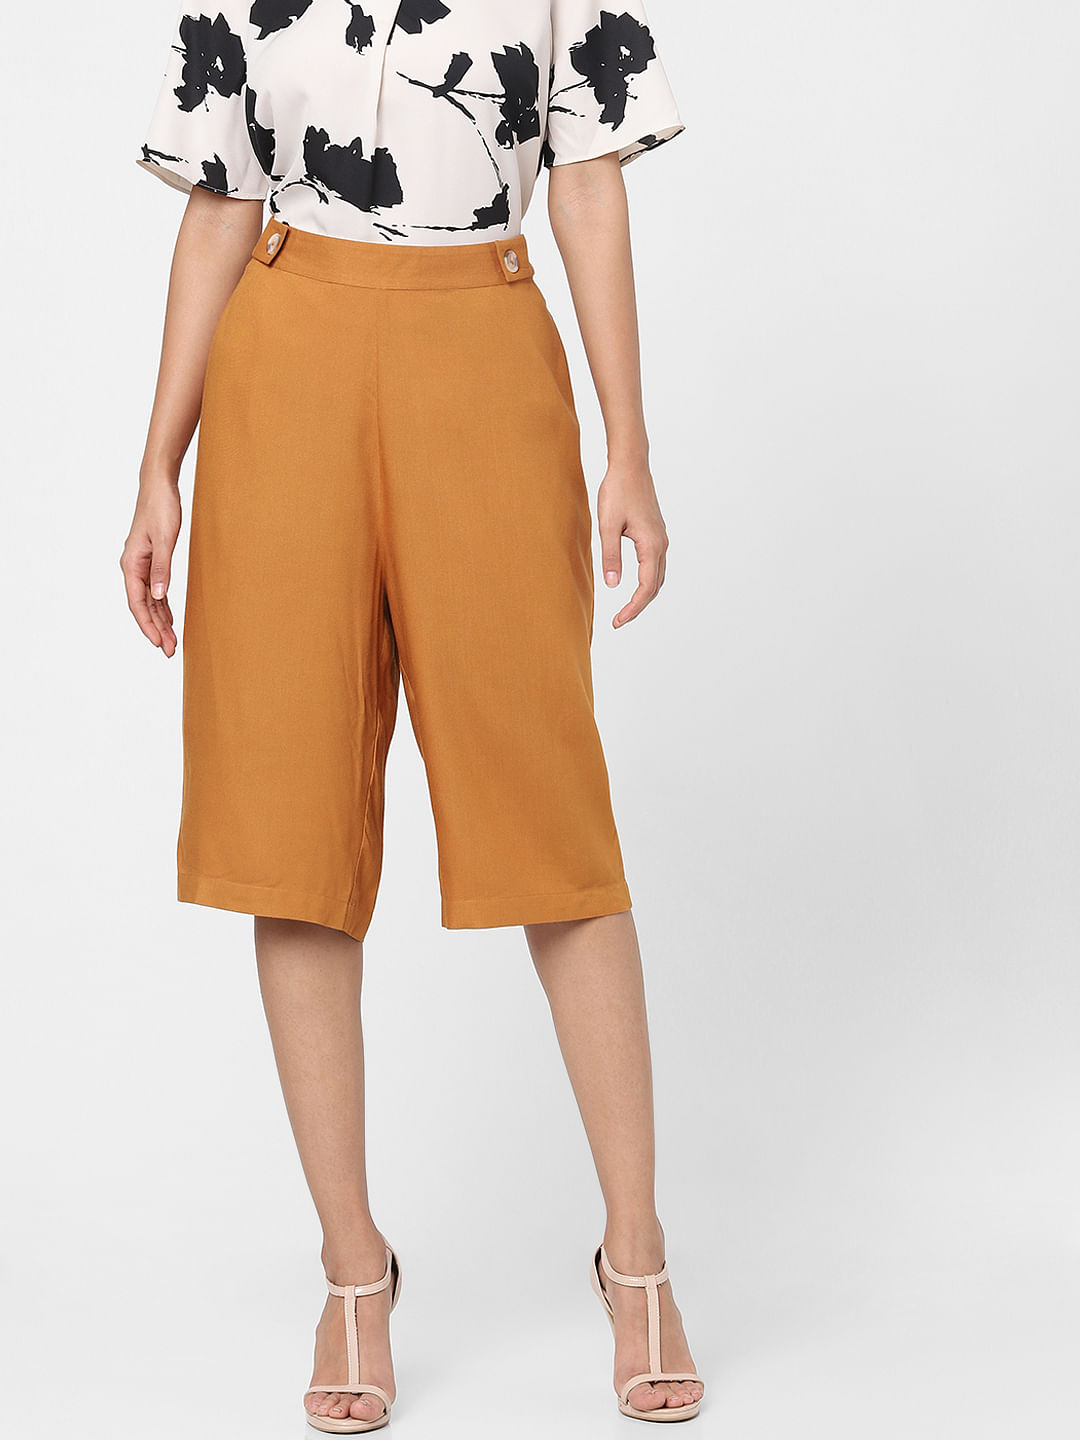 Women Cotton Linen Plain Trousers Pants Ladies Elastic Waist Bottoms  Trousers | eBay